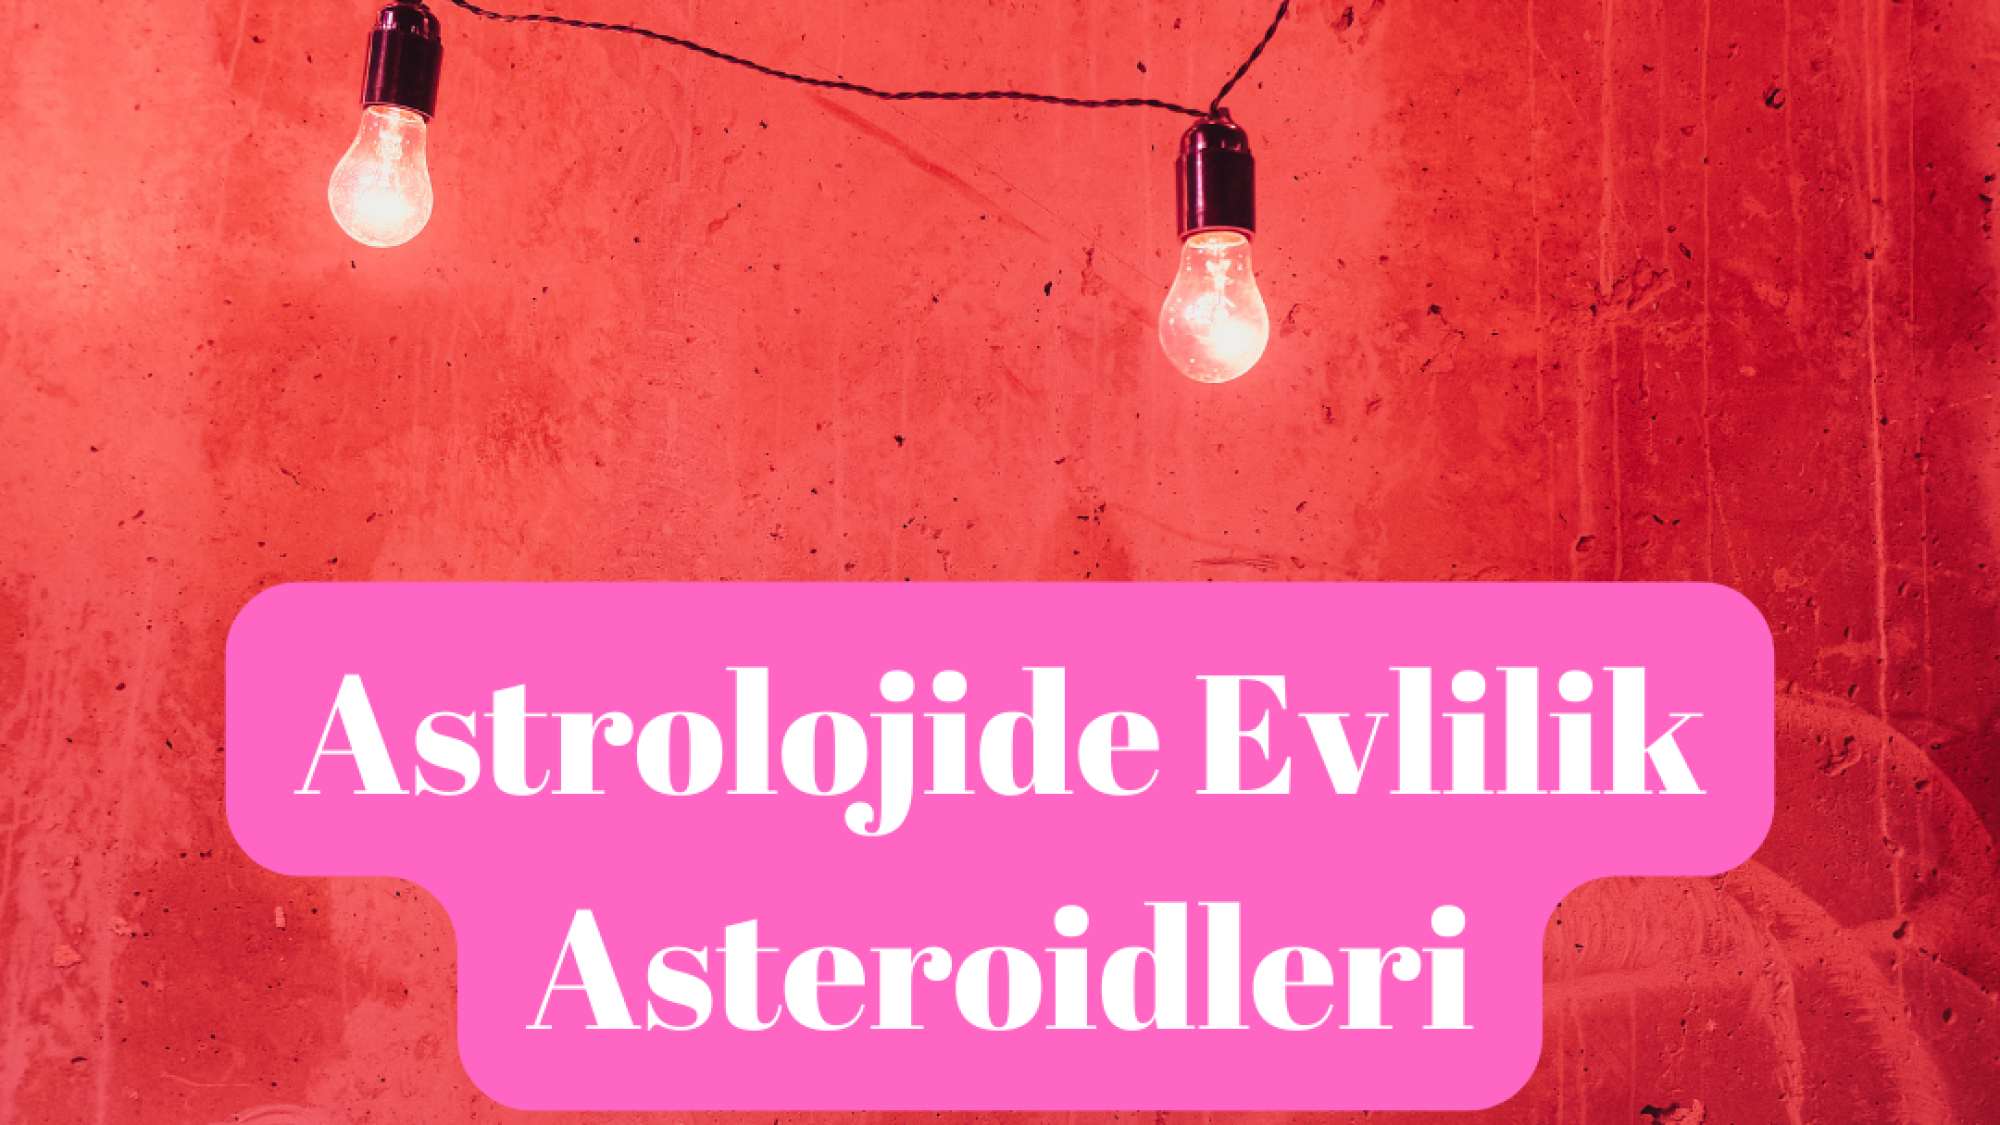 Astrolojide İlişki Evlilik Asteroidleri